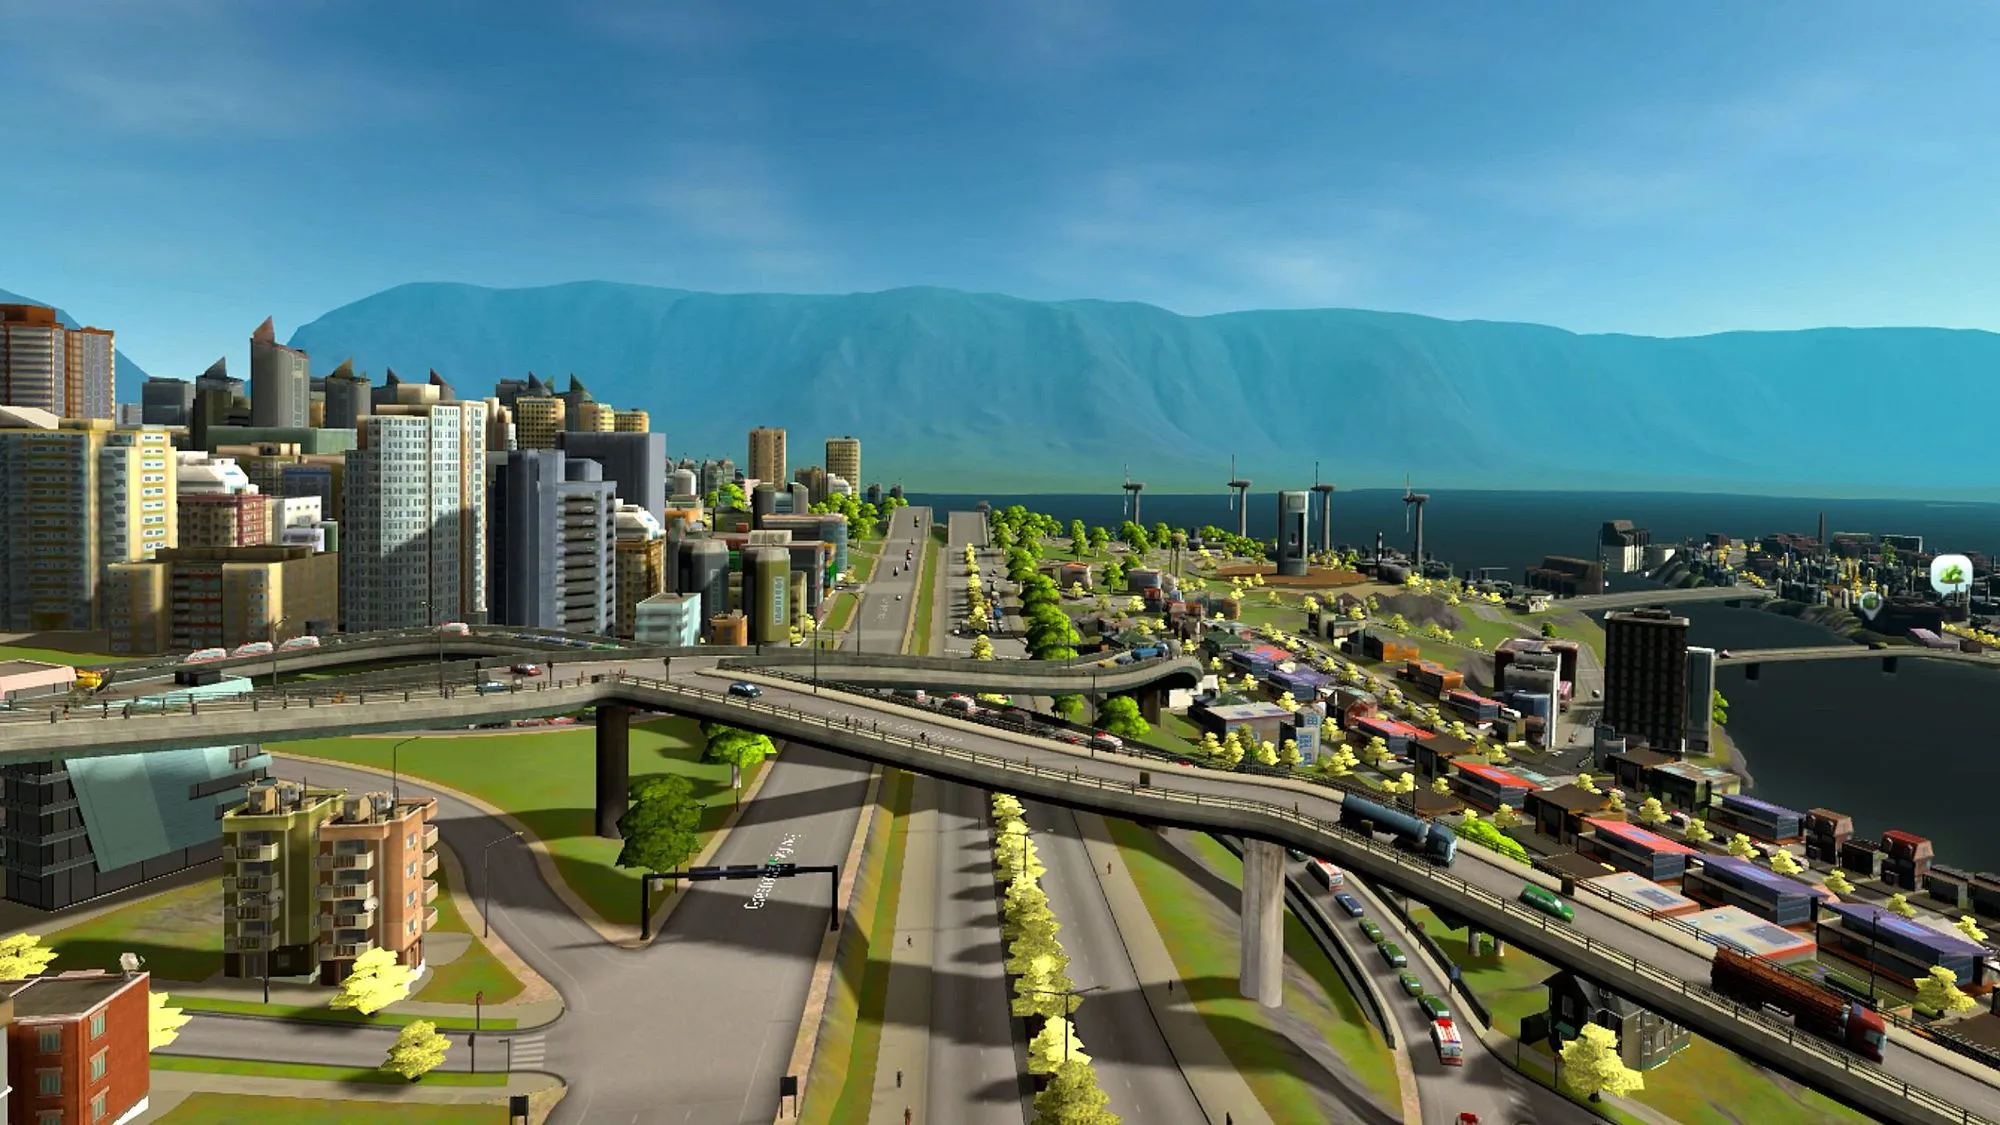 Cities: VR sẽ được phát hành cho Quest 2 vào đầu năm 2022